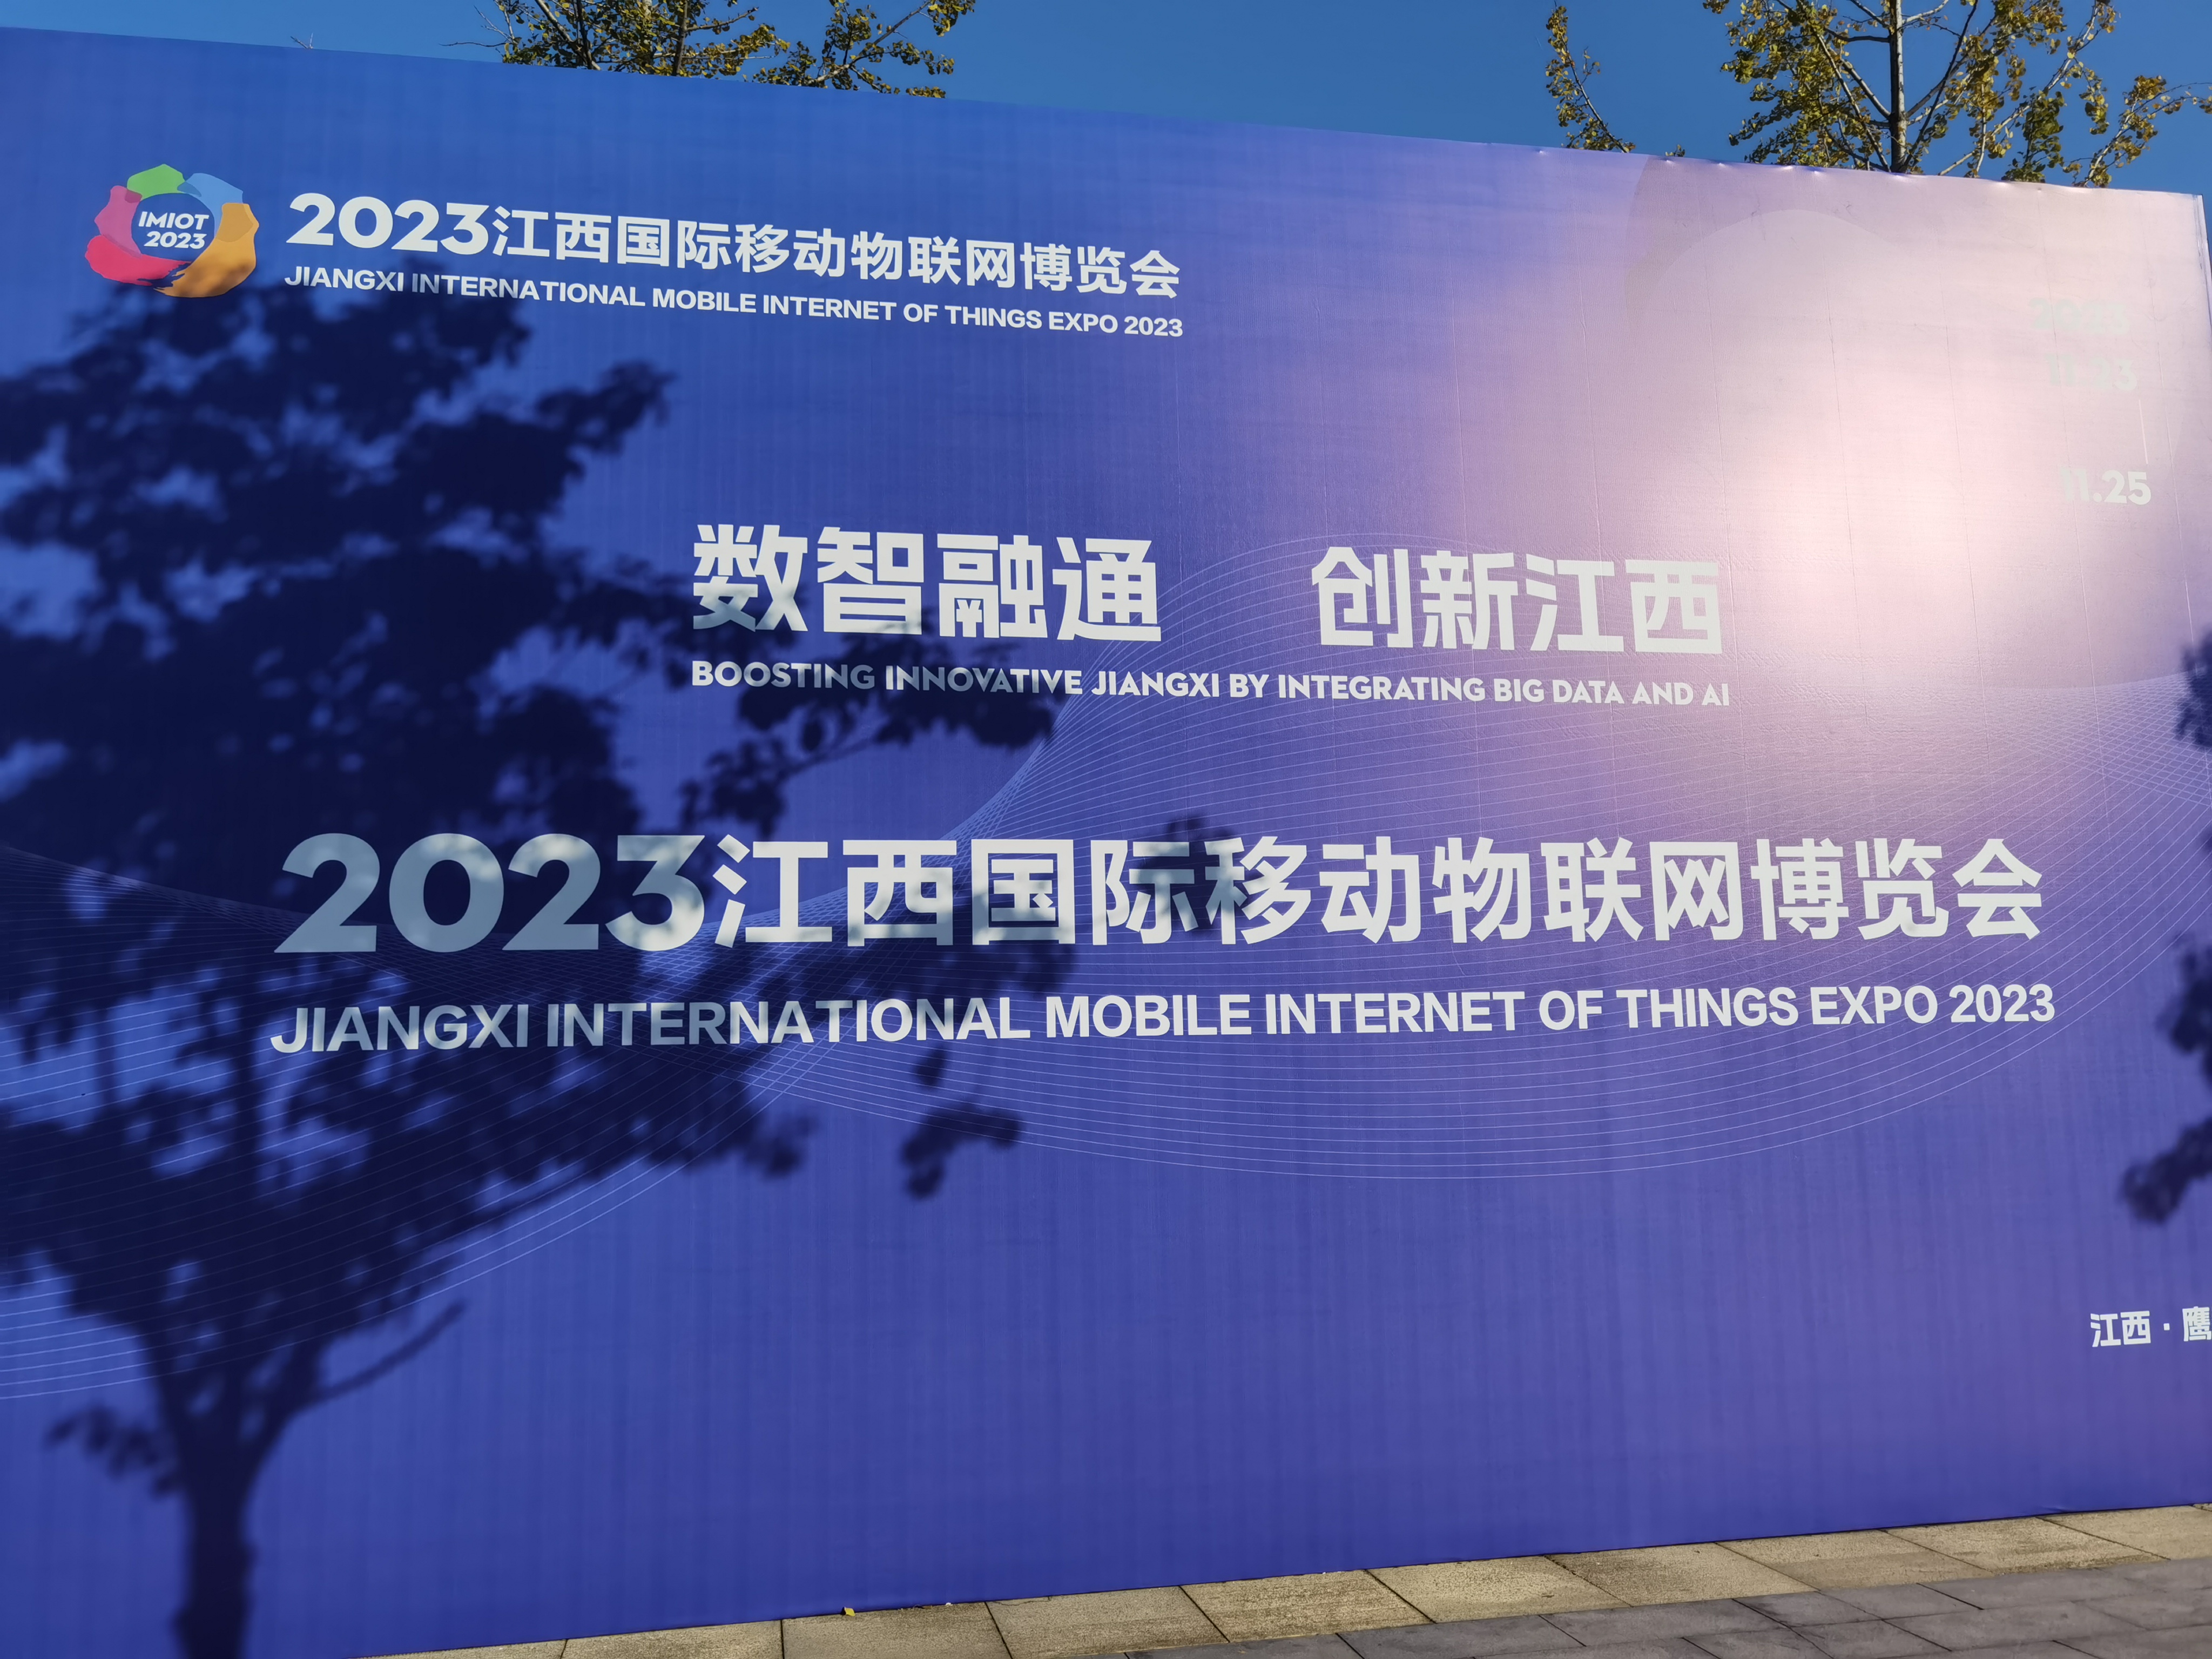 以智为媒、以数为界，共谋发展、共话未来。2023年江西国际移动物联网博览会于鹰潭市盛大开幕。